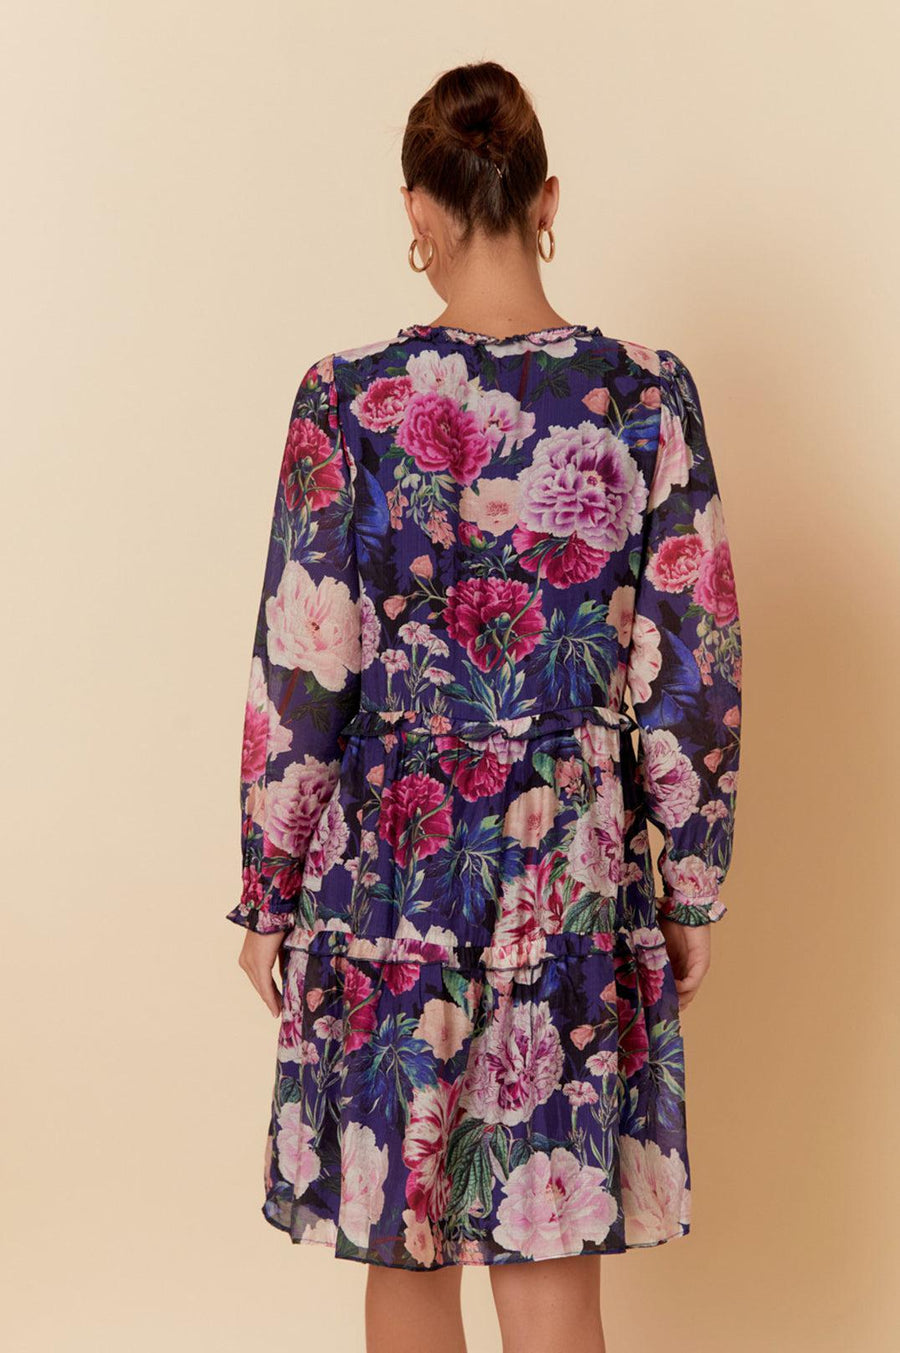 Adorne Sloan Windsor Print Dress